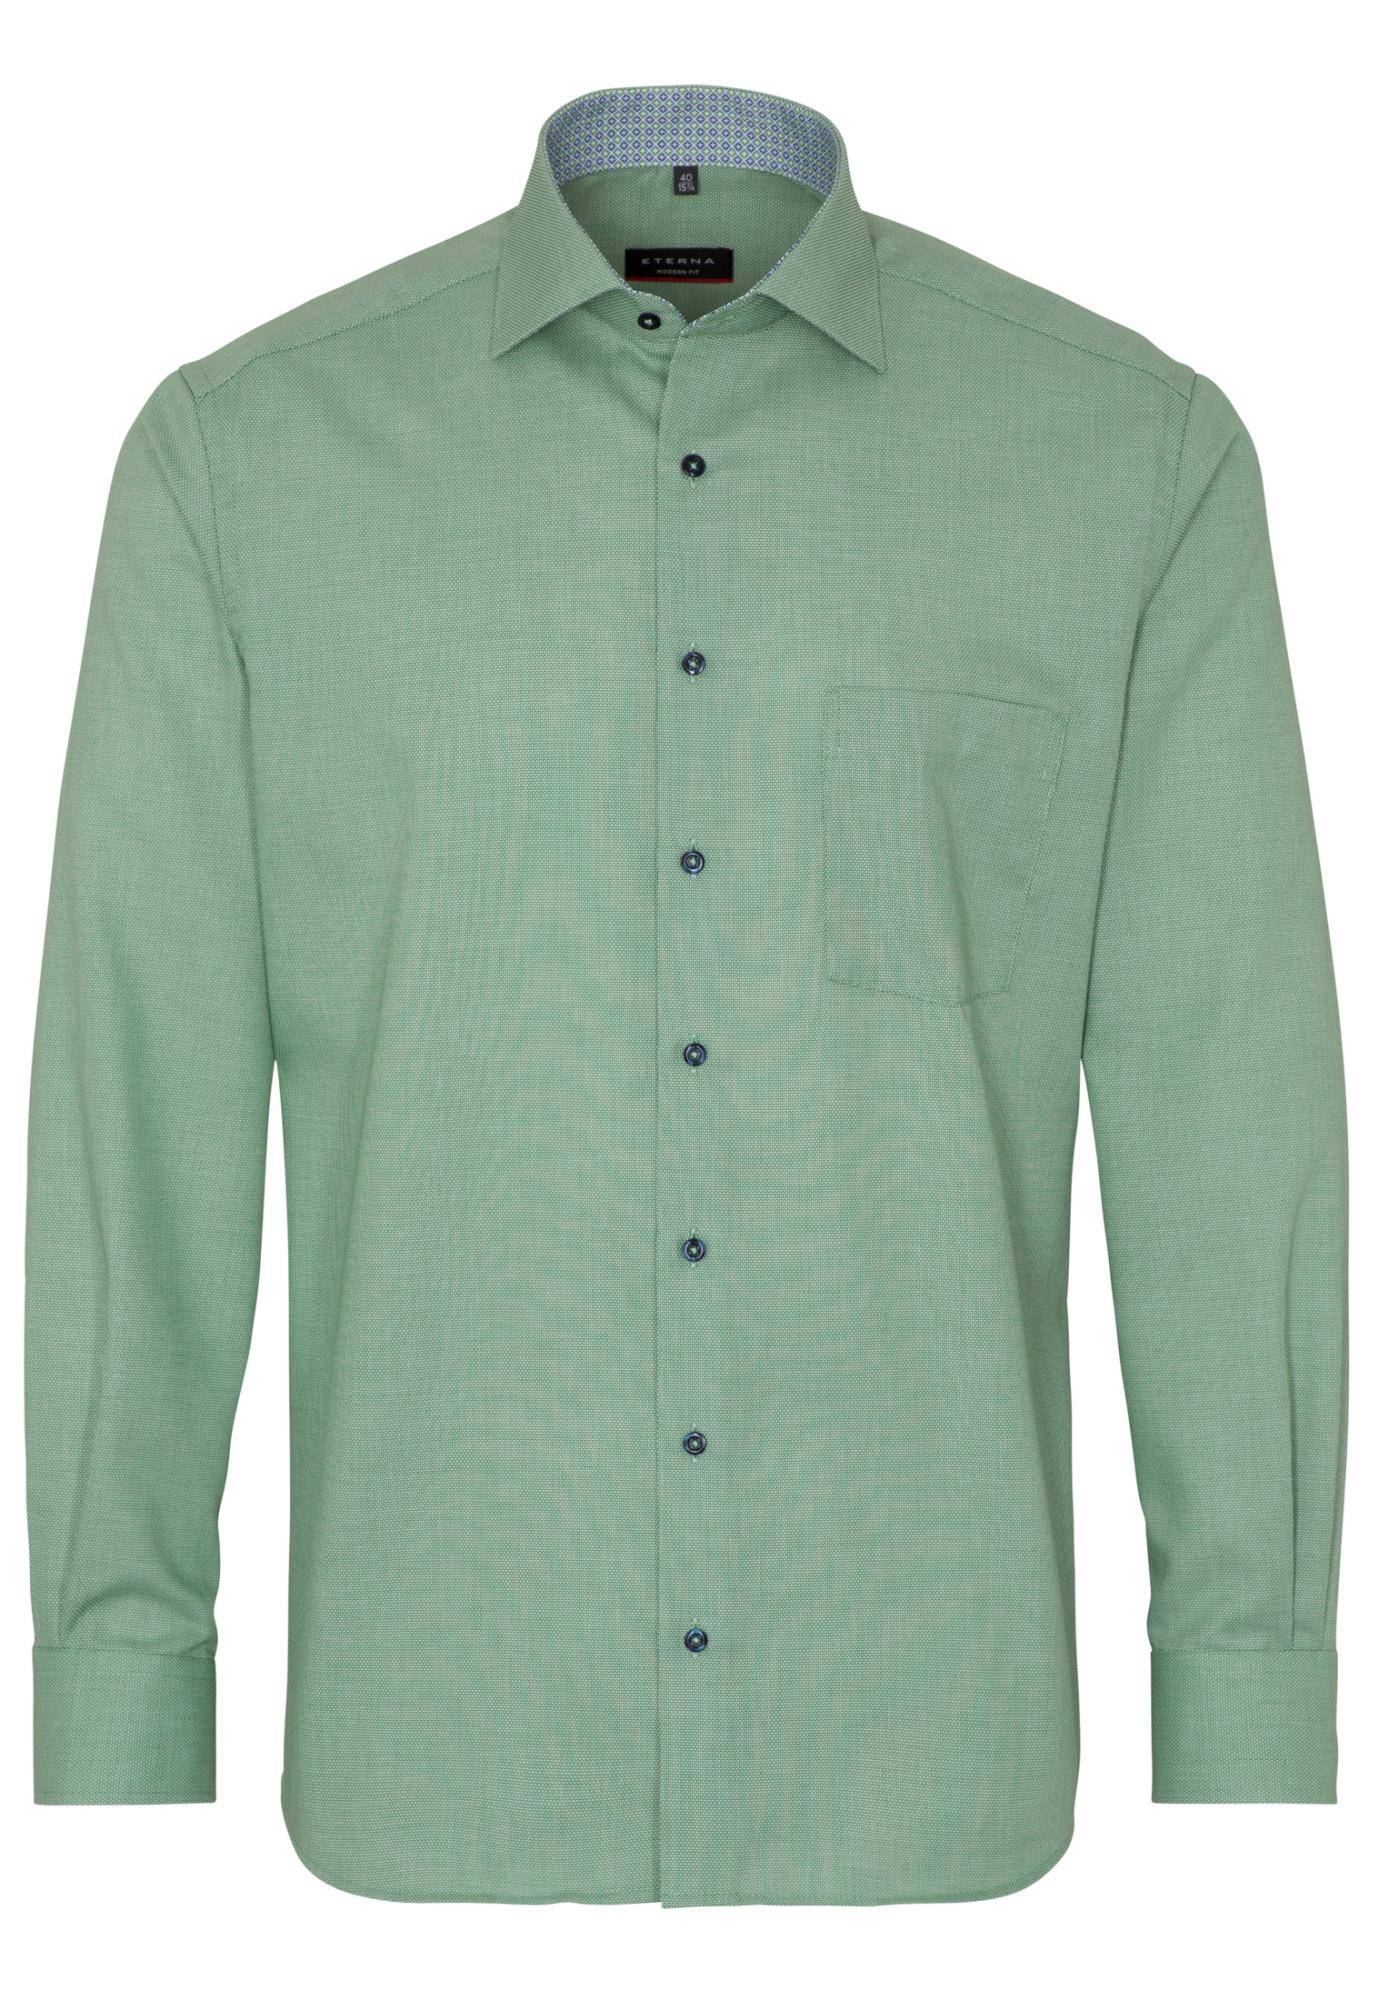 Мужская рубашка ETERNA, зеленая, цвет зеленый, размер 58 - фото 1